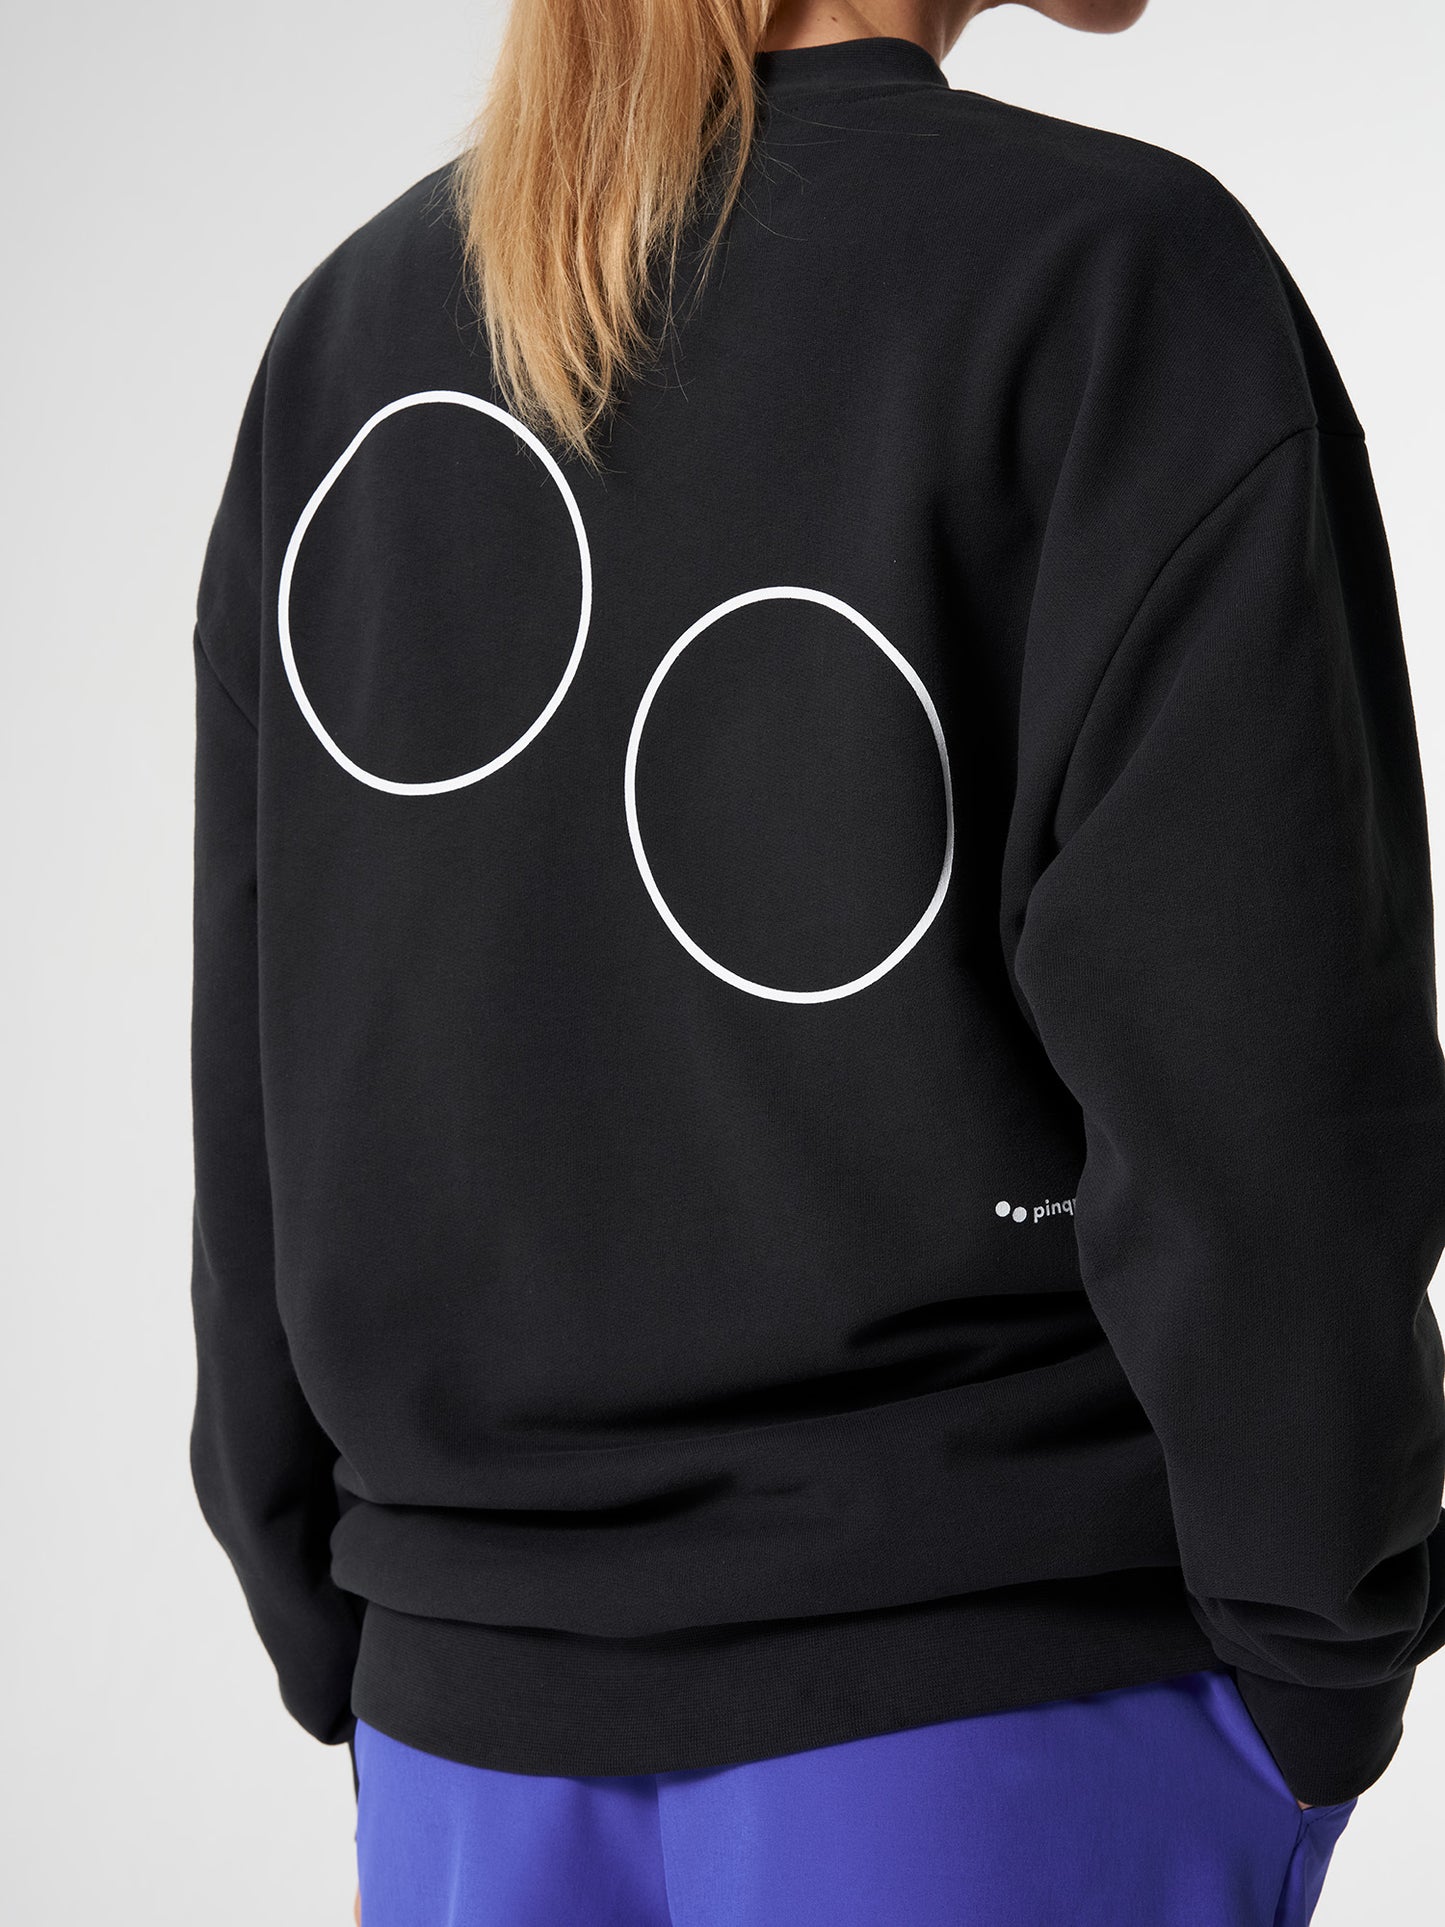 pinqponq-Sweatshirt-Unisex-Circles-Peat-Black-model-closeup-back